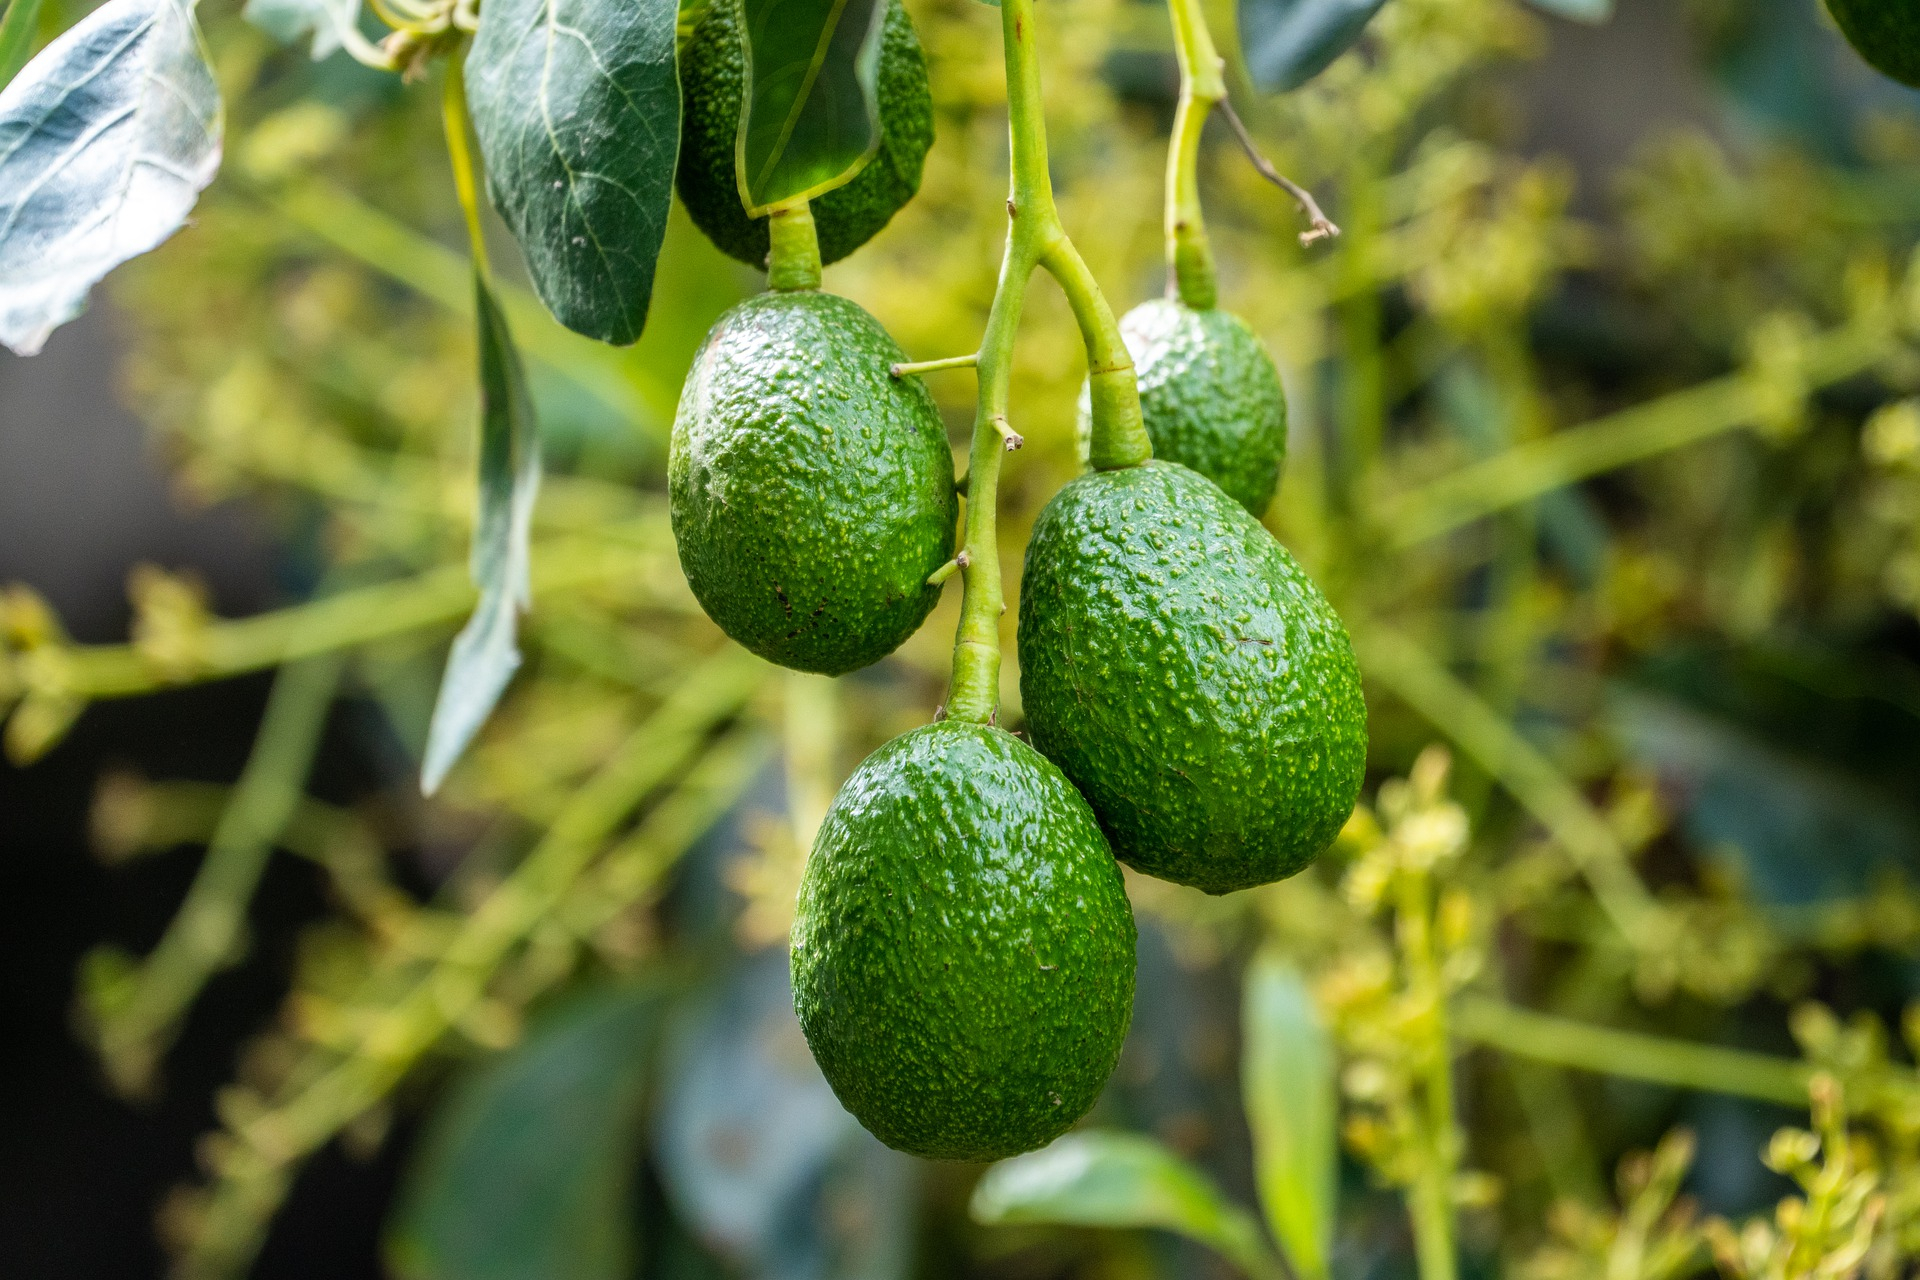 Созревание авокадо зависит от этилена &mdash; газа, который разрушает его внутренние стенки и превращает крахмал в сахар